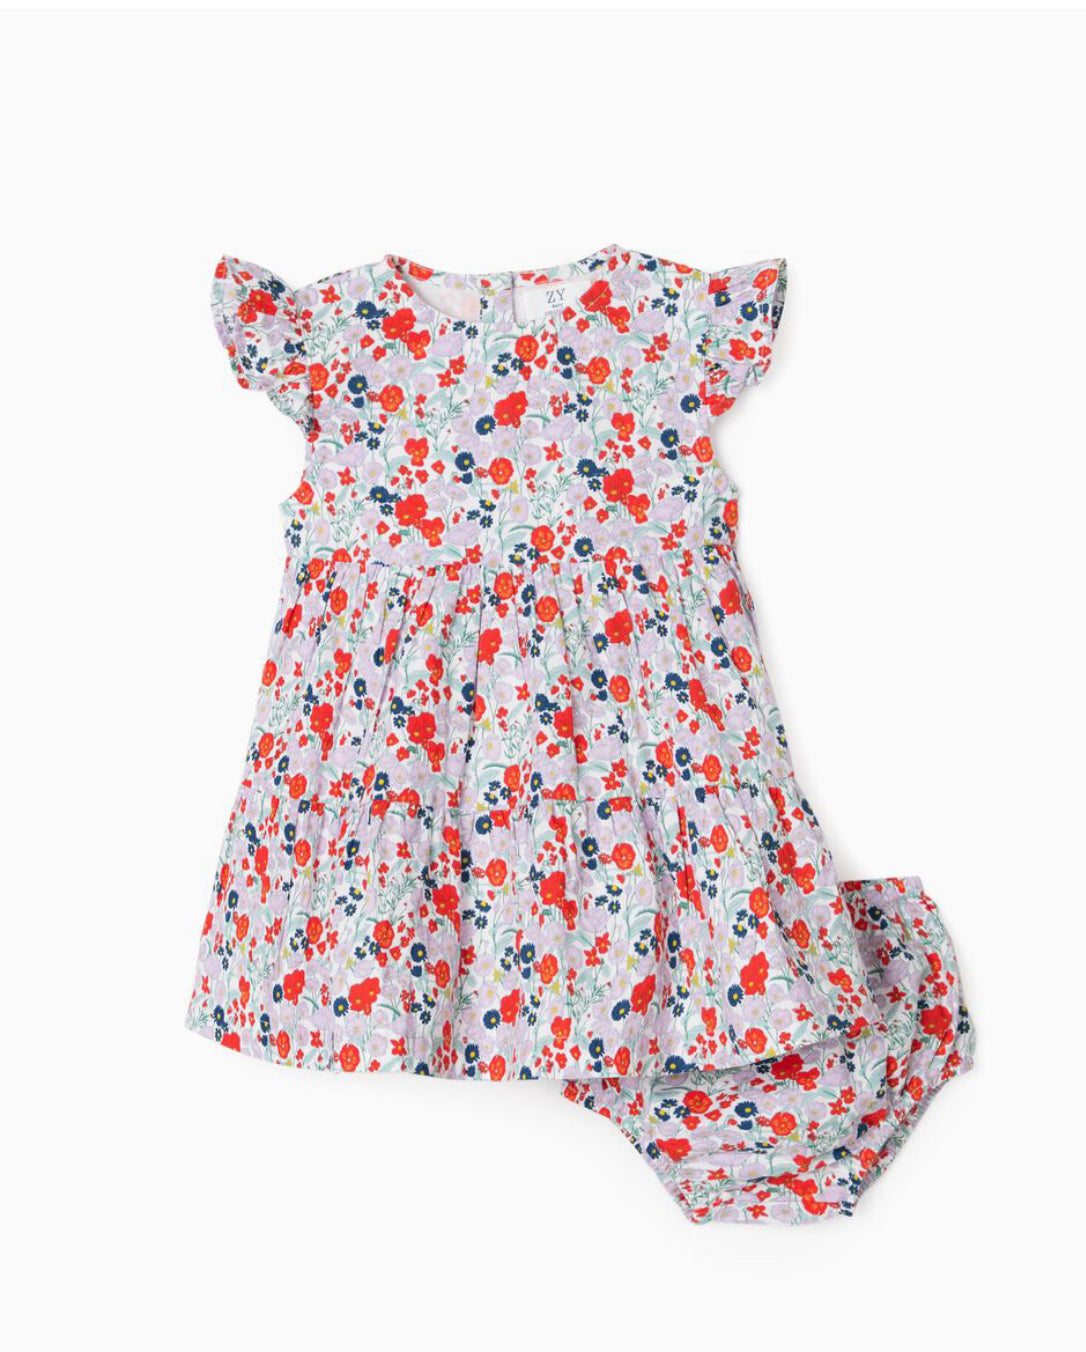 Vestido + Cubrepañal Para Bebé Niña, Multicolor lolimariscalmoda 25.99